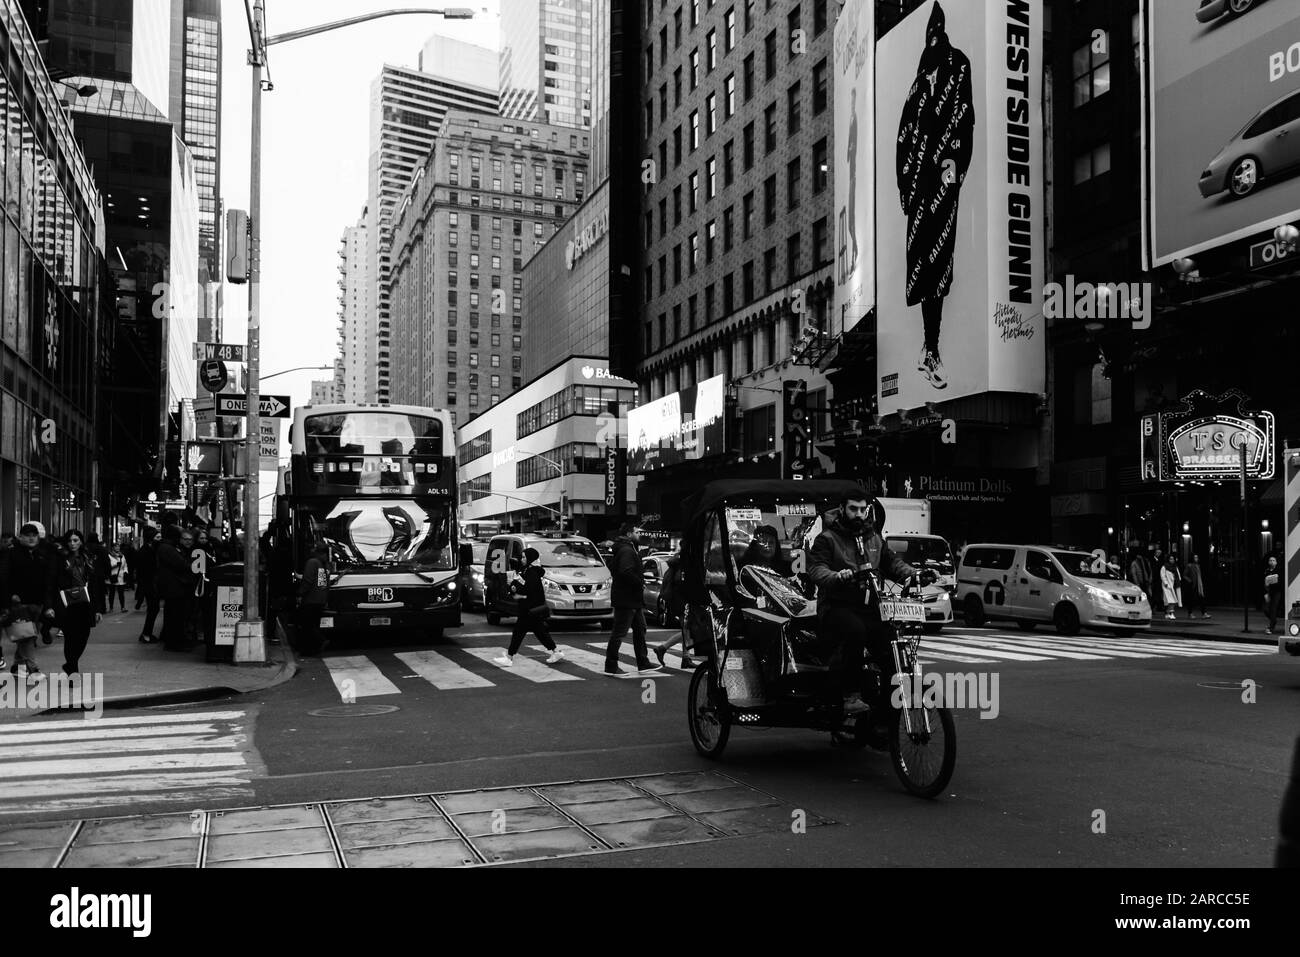 New YORK CITY - 19 NOVEMBRE : Rues animées de New York City, NY, États-Unis. Image en noir et blanc Banque D'Images